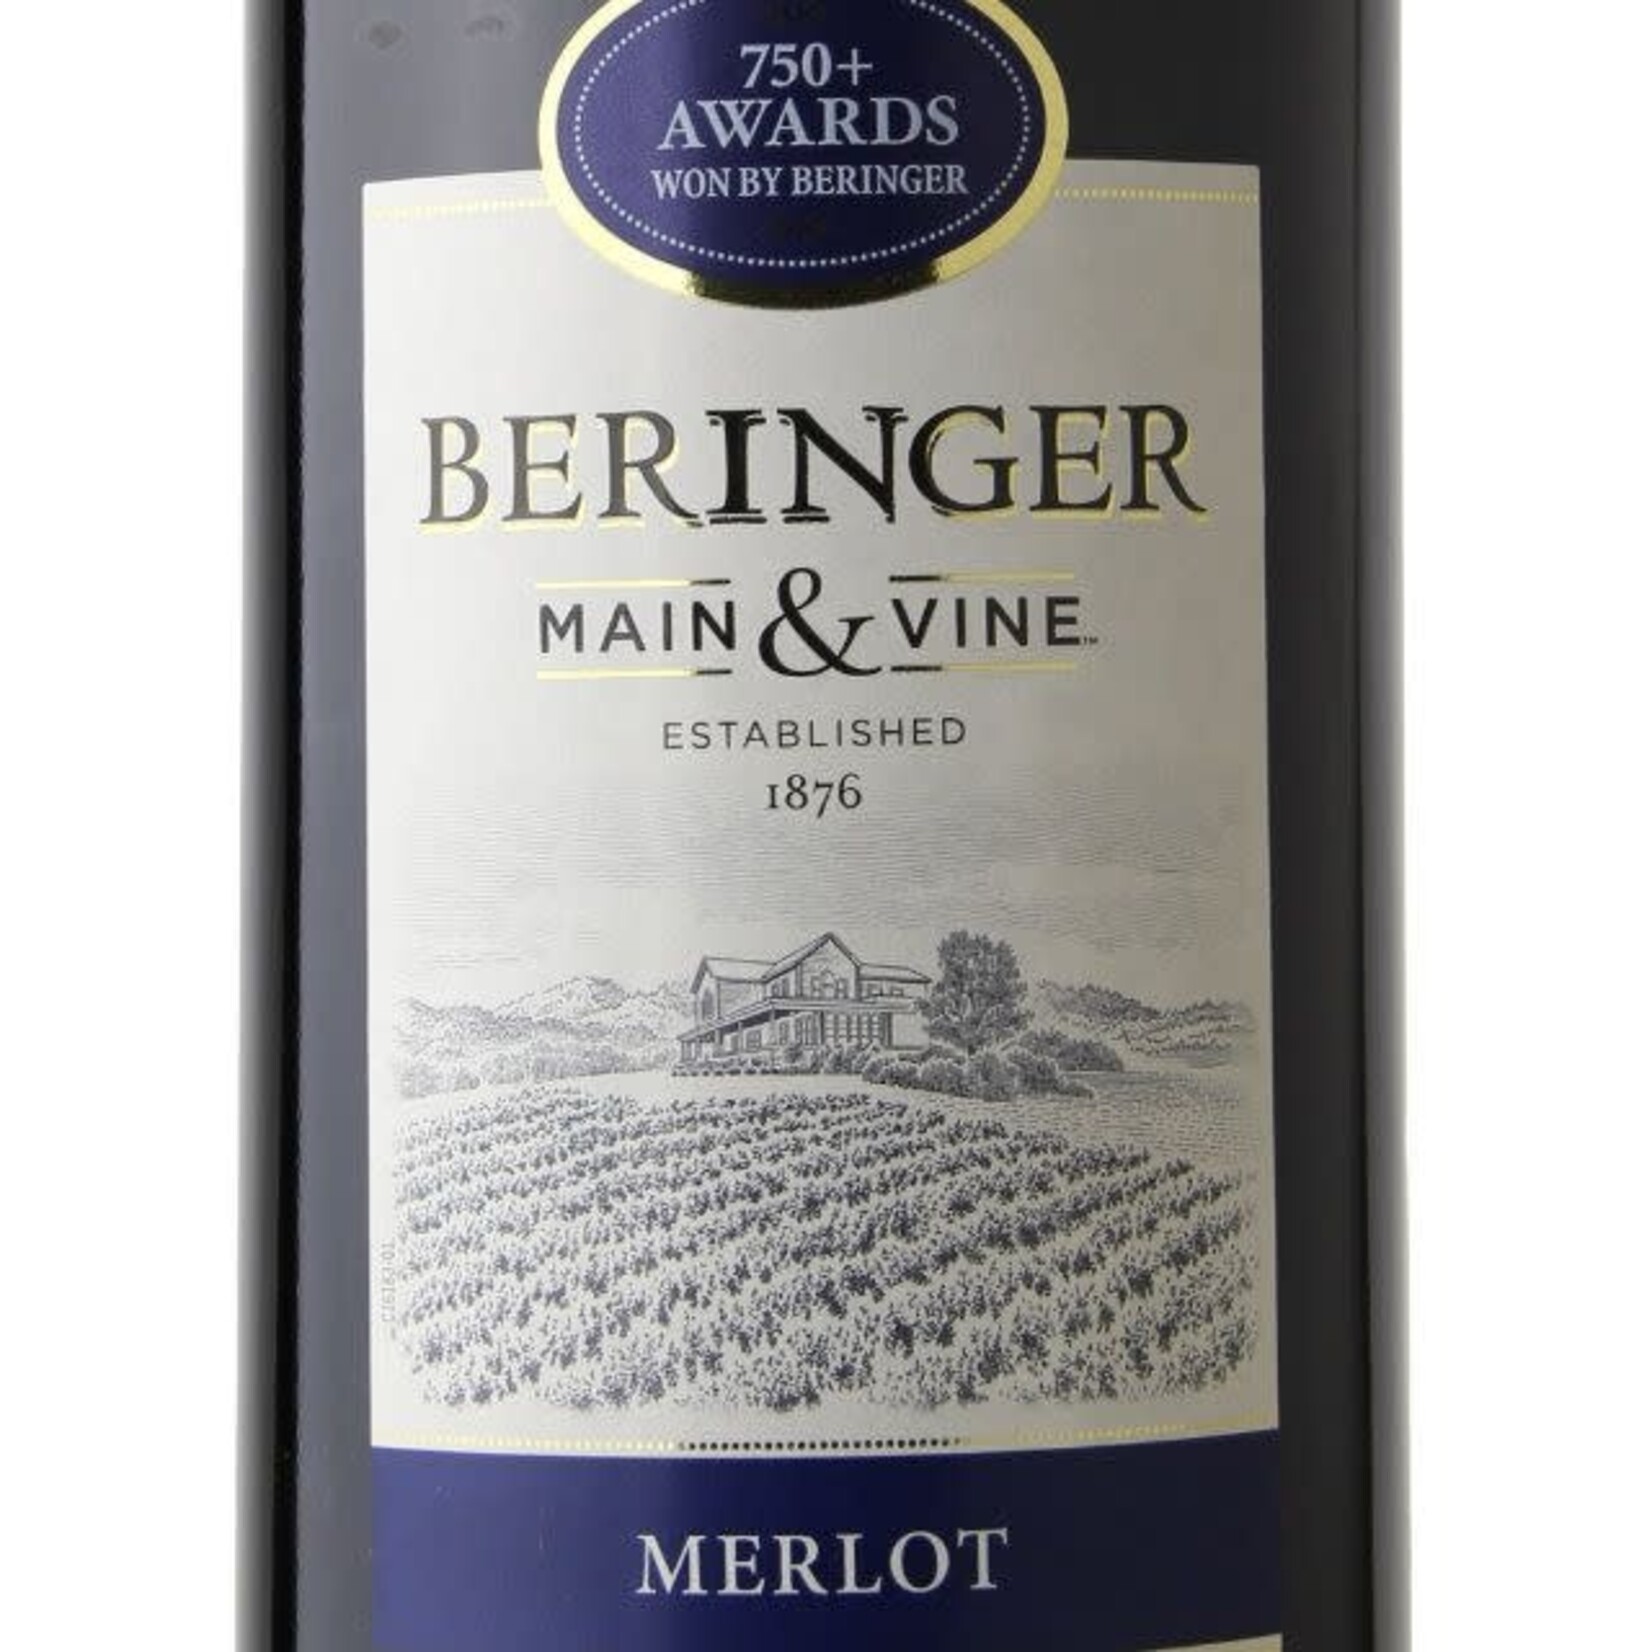 Wine Beringer Main & Vine Merlot California